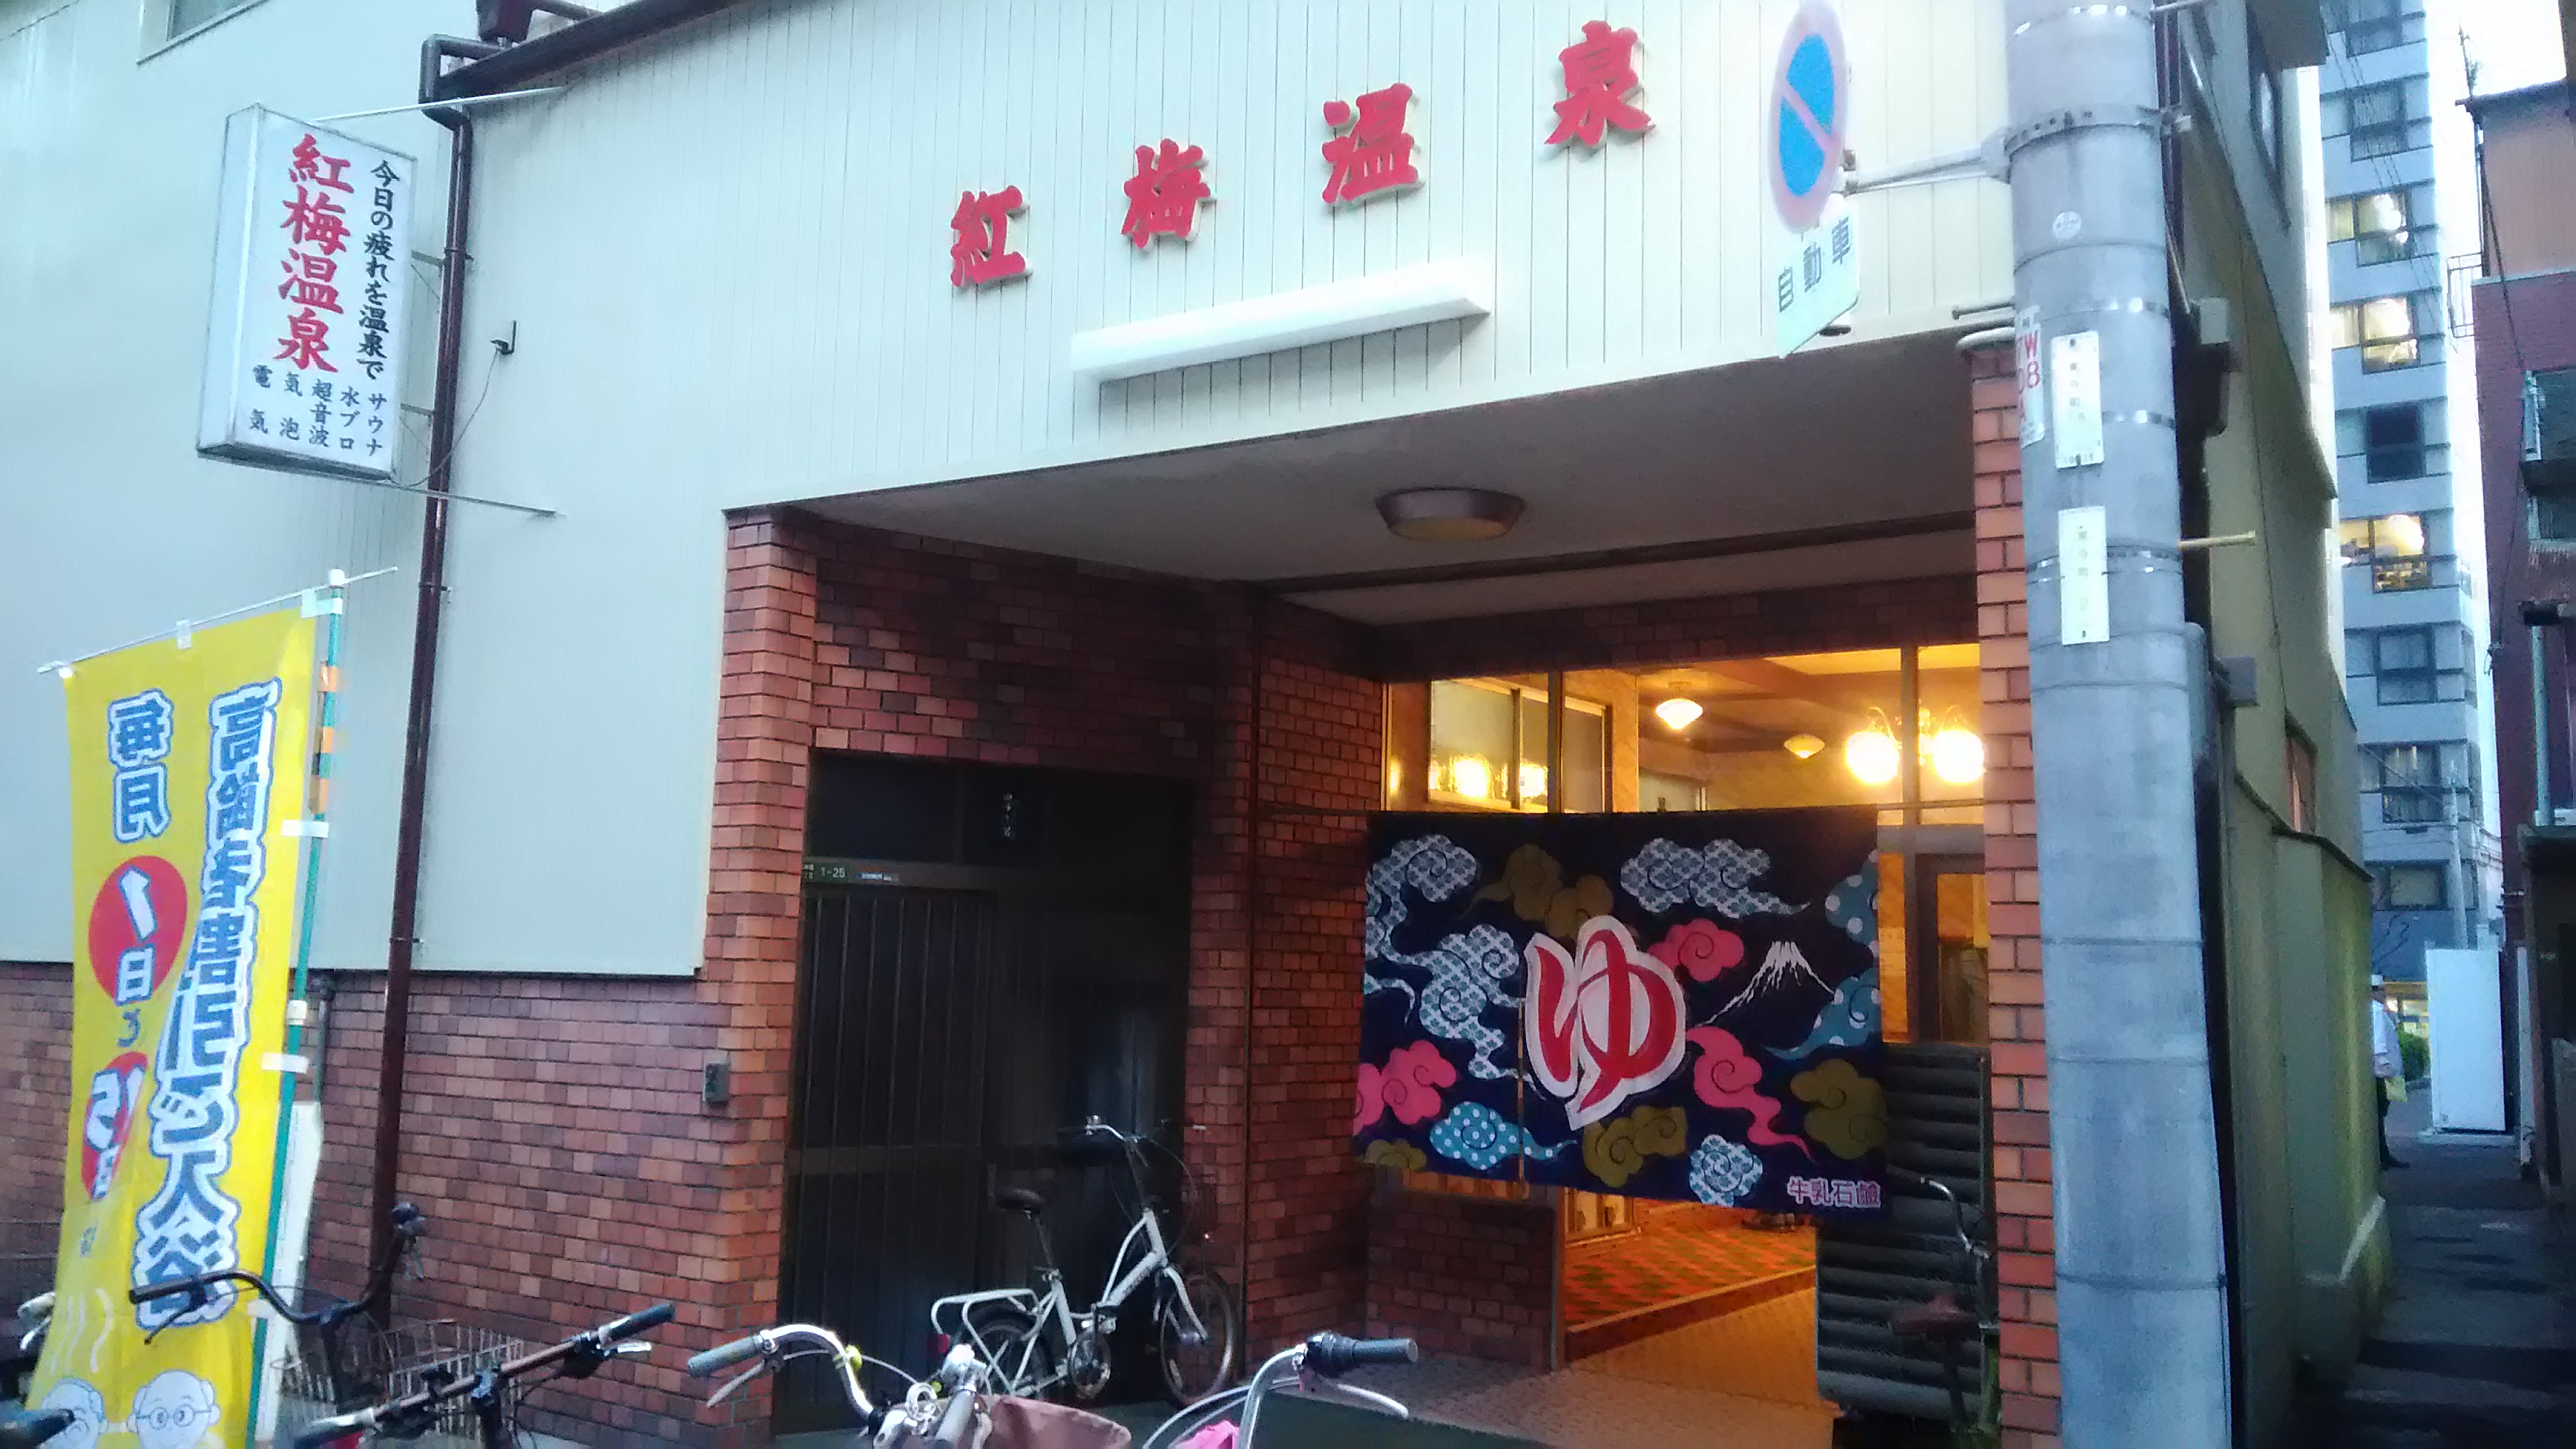 大阪の銭湯 紅梅温泉 天神橋筋商店街に近くにある便利でレトロな銭湯